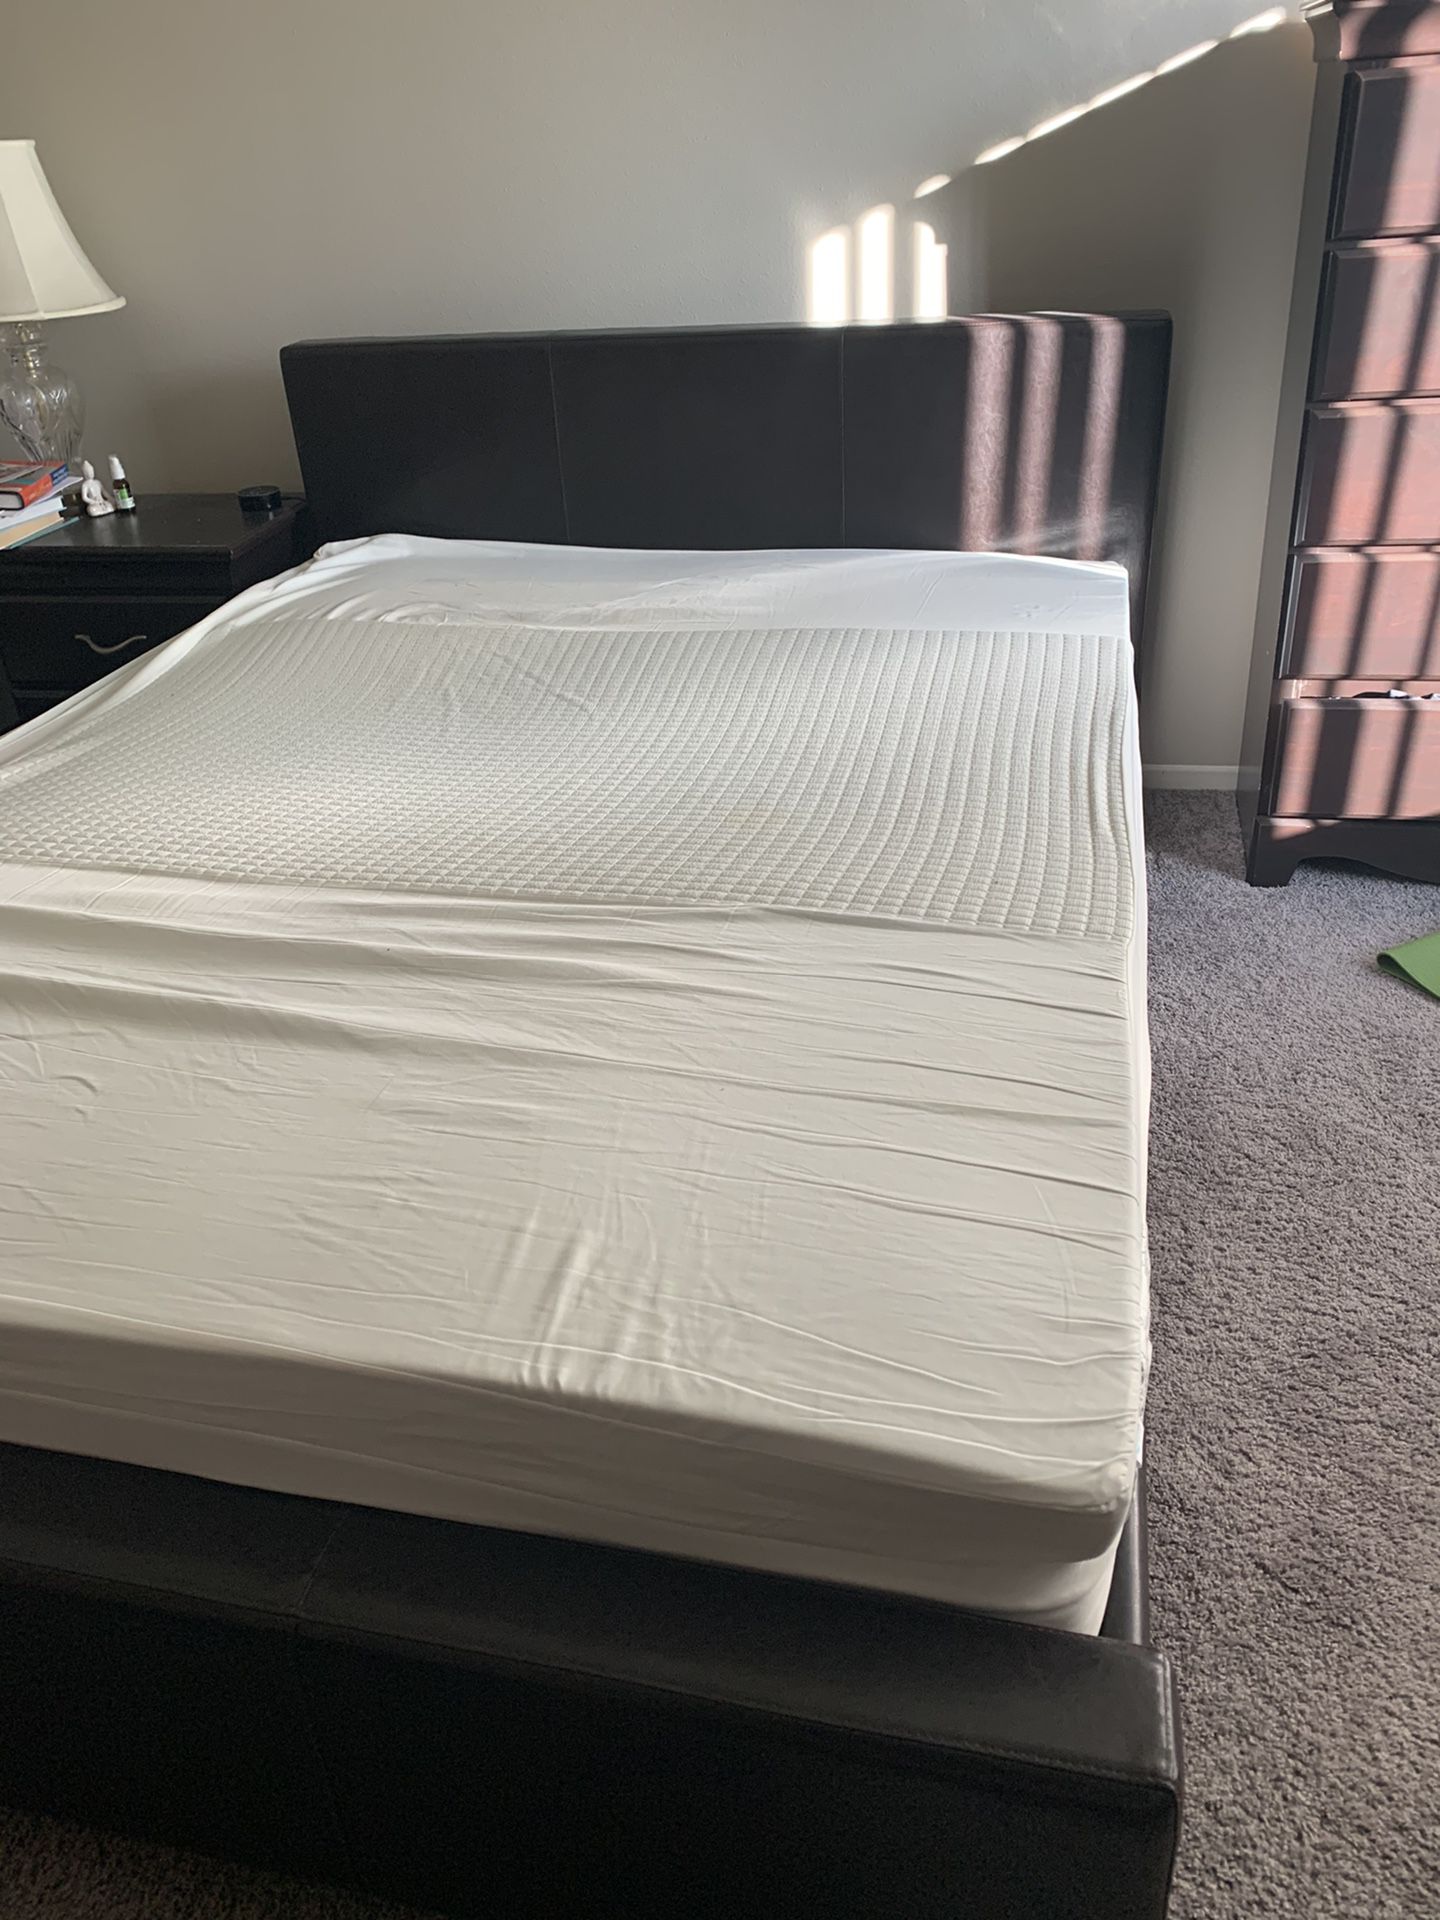 Queen bed frame plus mattress